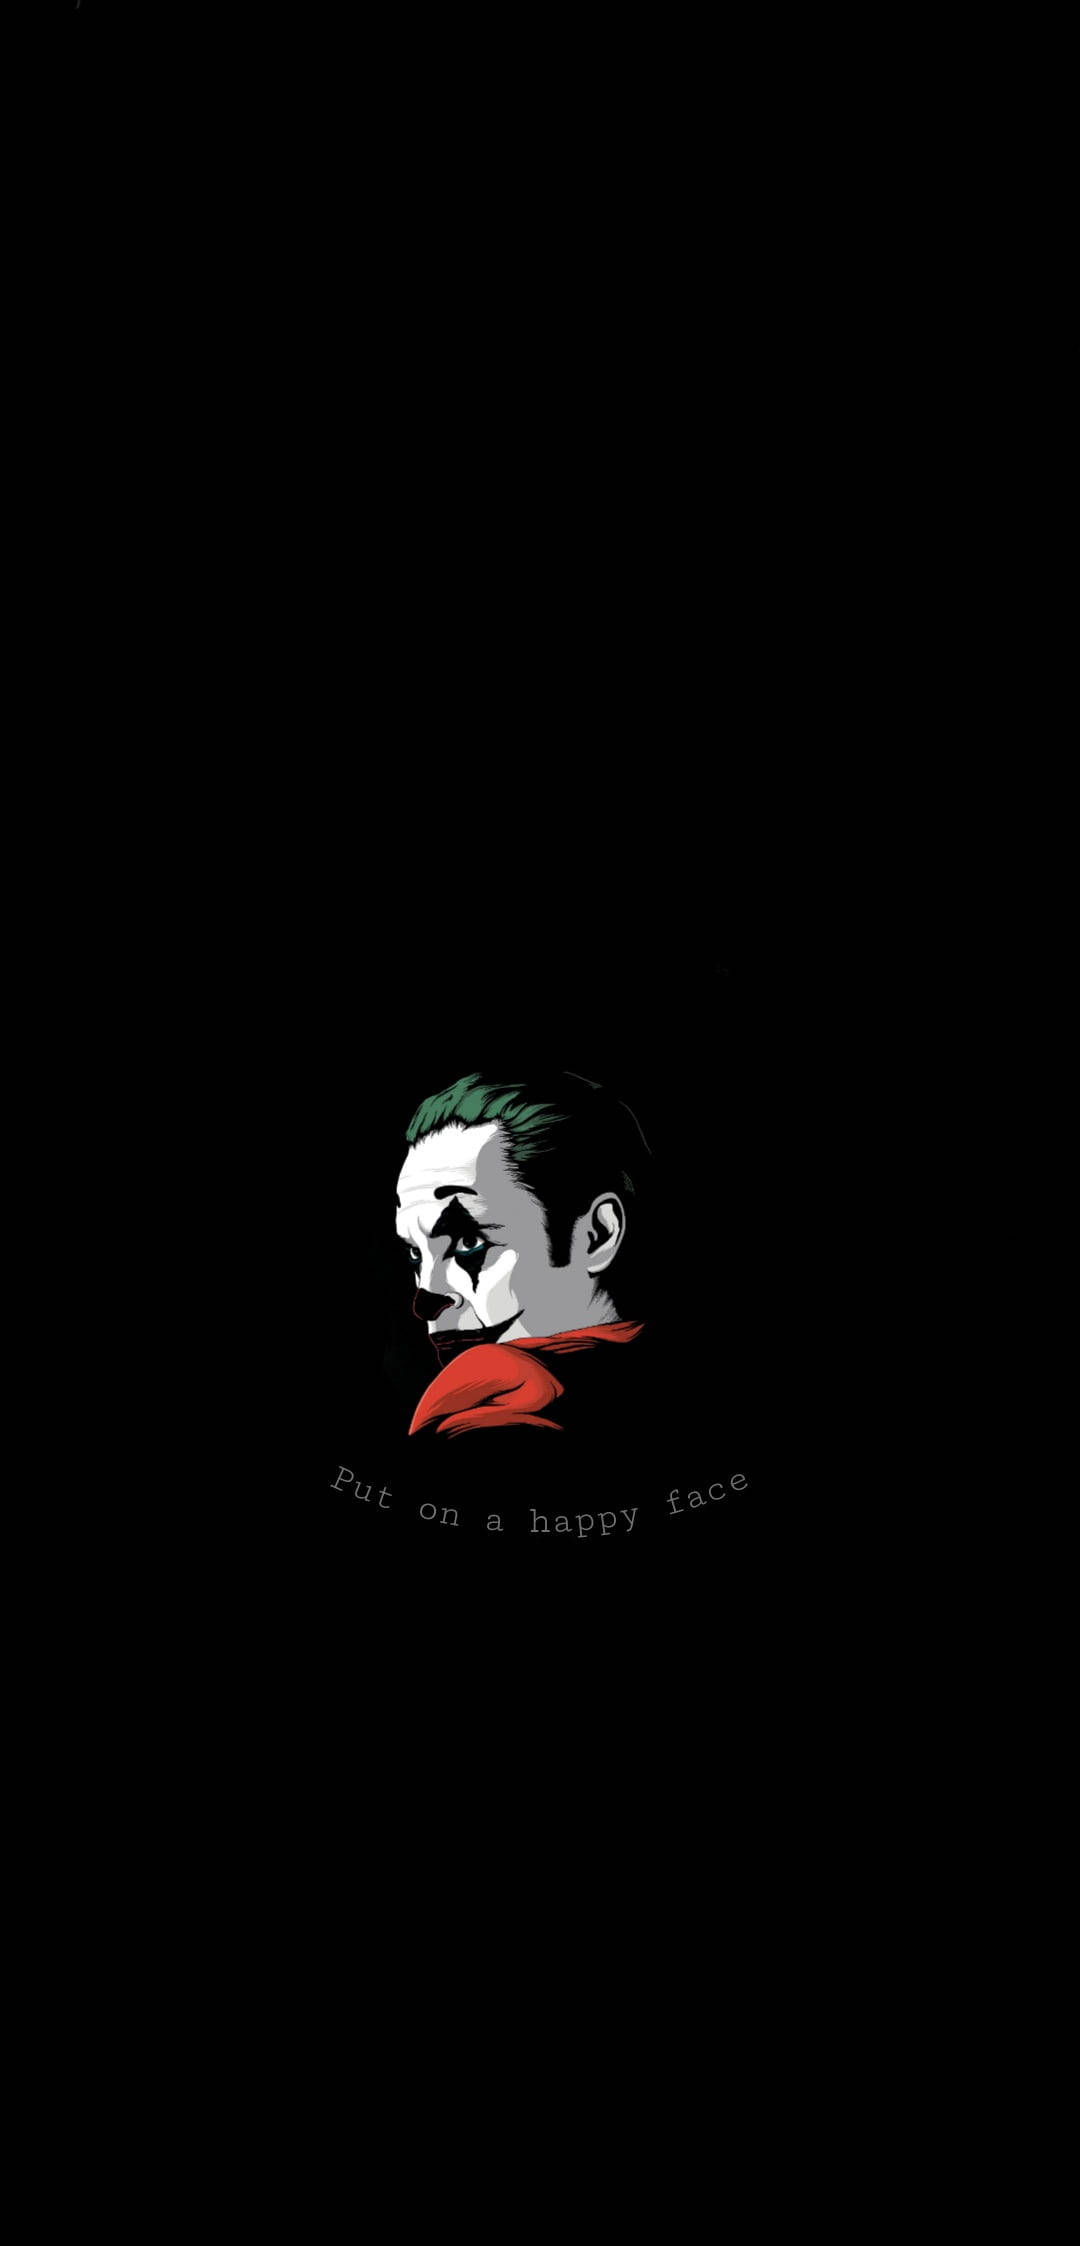 Download Sad Quote The Joker Wallpaper 